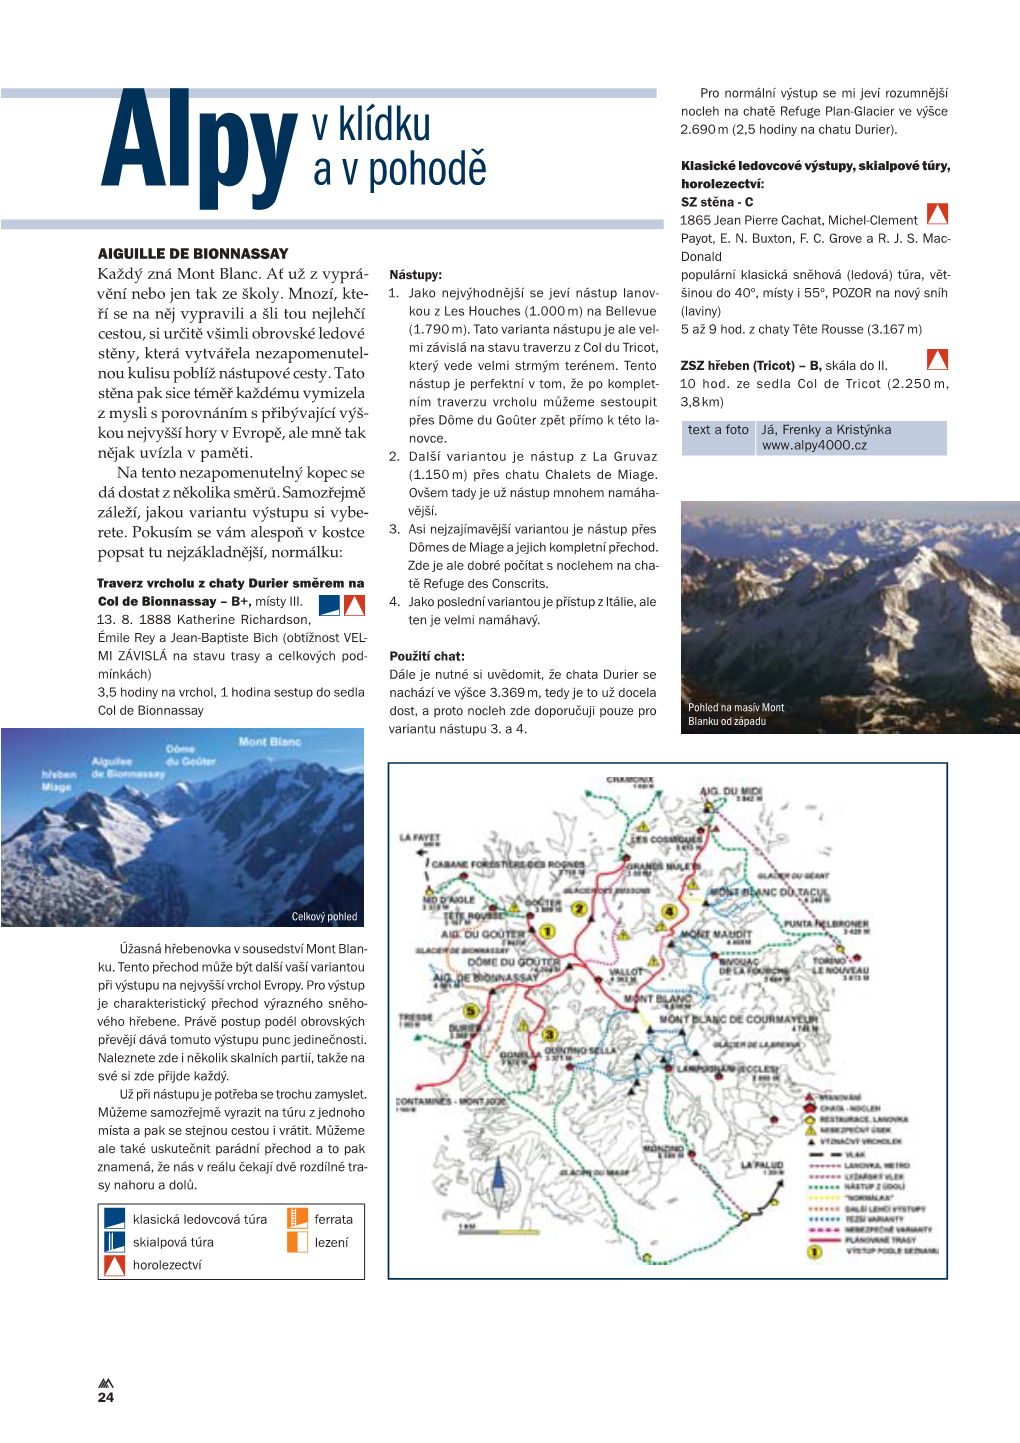 AIGUILLE DE BIONNASSAY Donald Každý Zná Mont Blanc